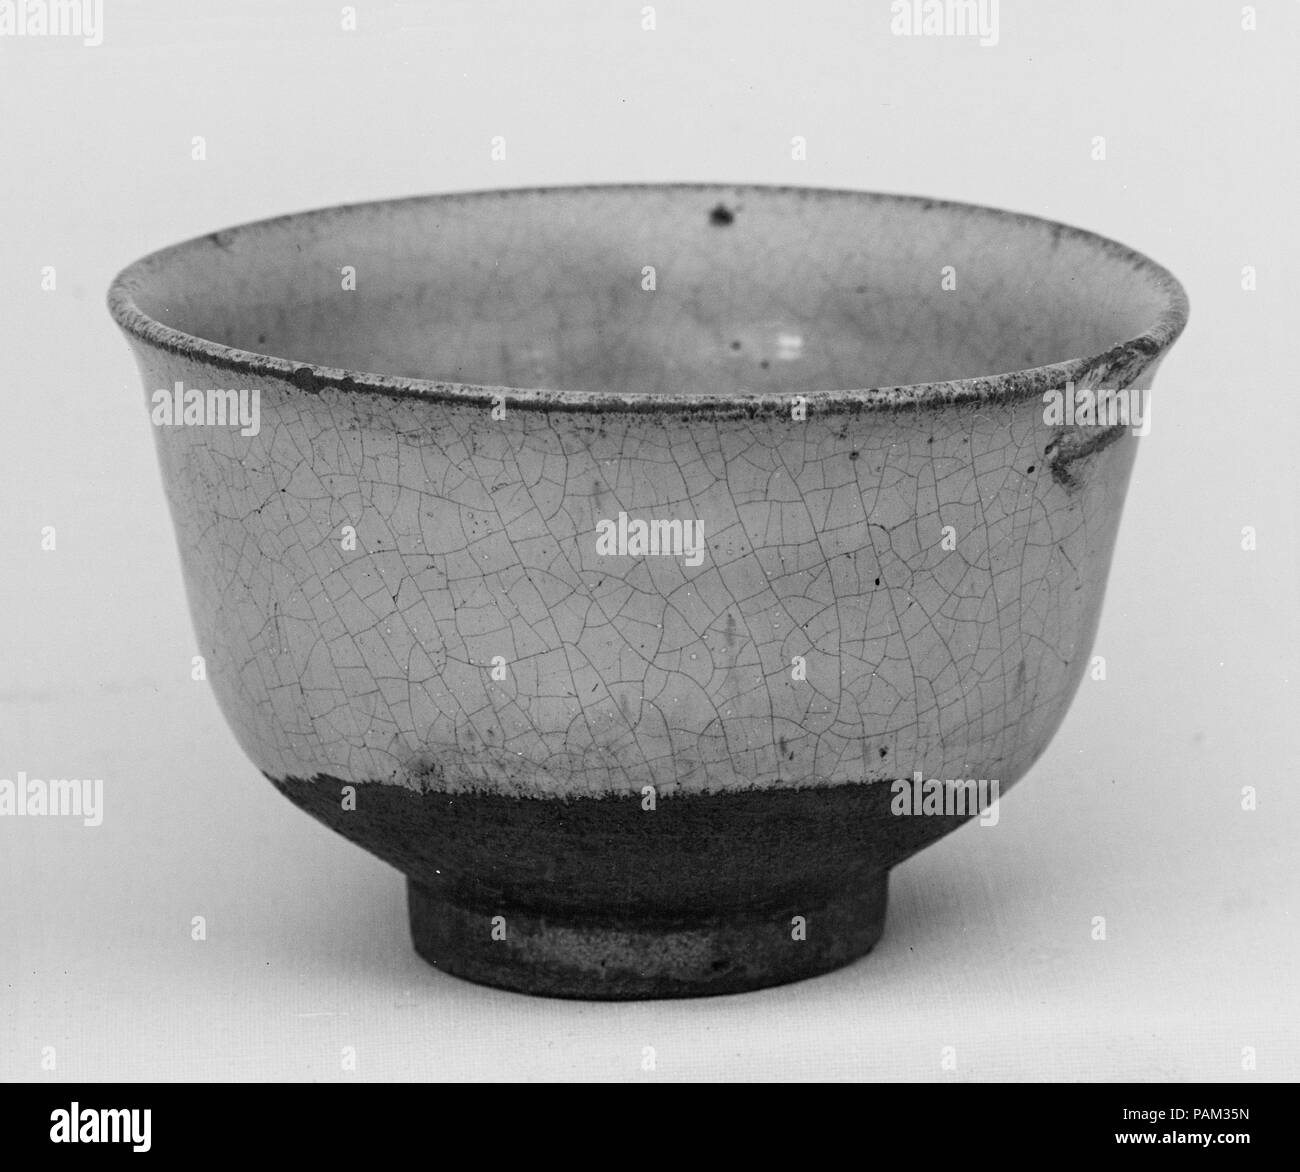 Bowl. Culture: Japan. Dimensions: H. 2 1/2 in. (6.4 cm); Diam. 3 7/8 in. (9.8 cm). Date: 1700-1780. Museum: Metropolitan Museum of Art, New York, USA. Stock Photo